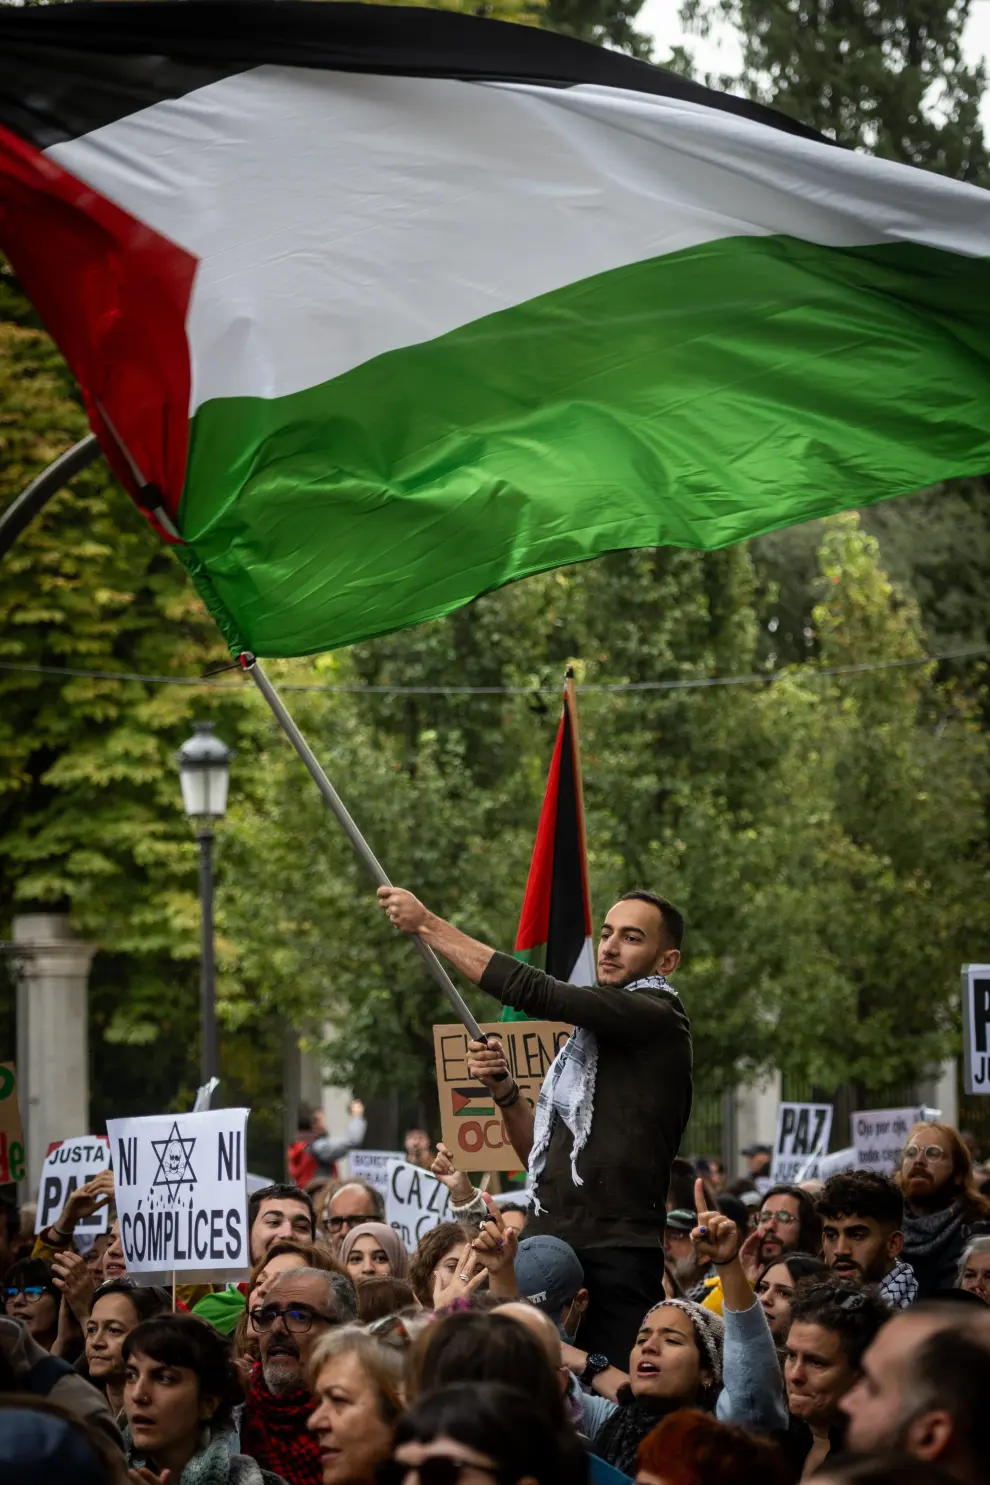 Algunos momentos de la manifestación en Madrid en favor del pueblo palestino y contra la guerra.